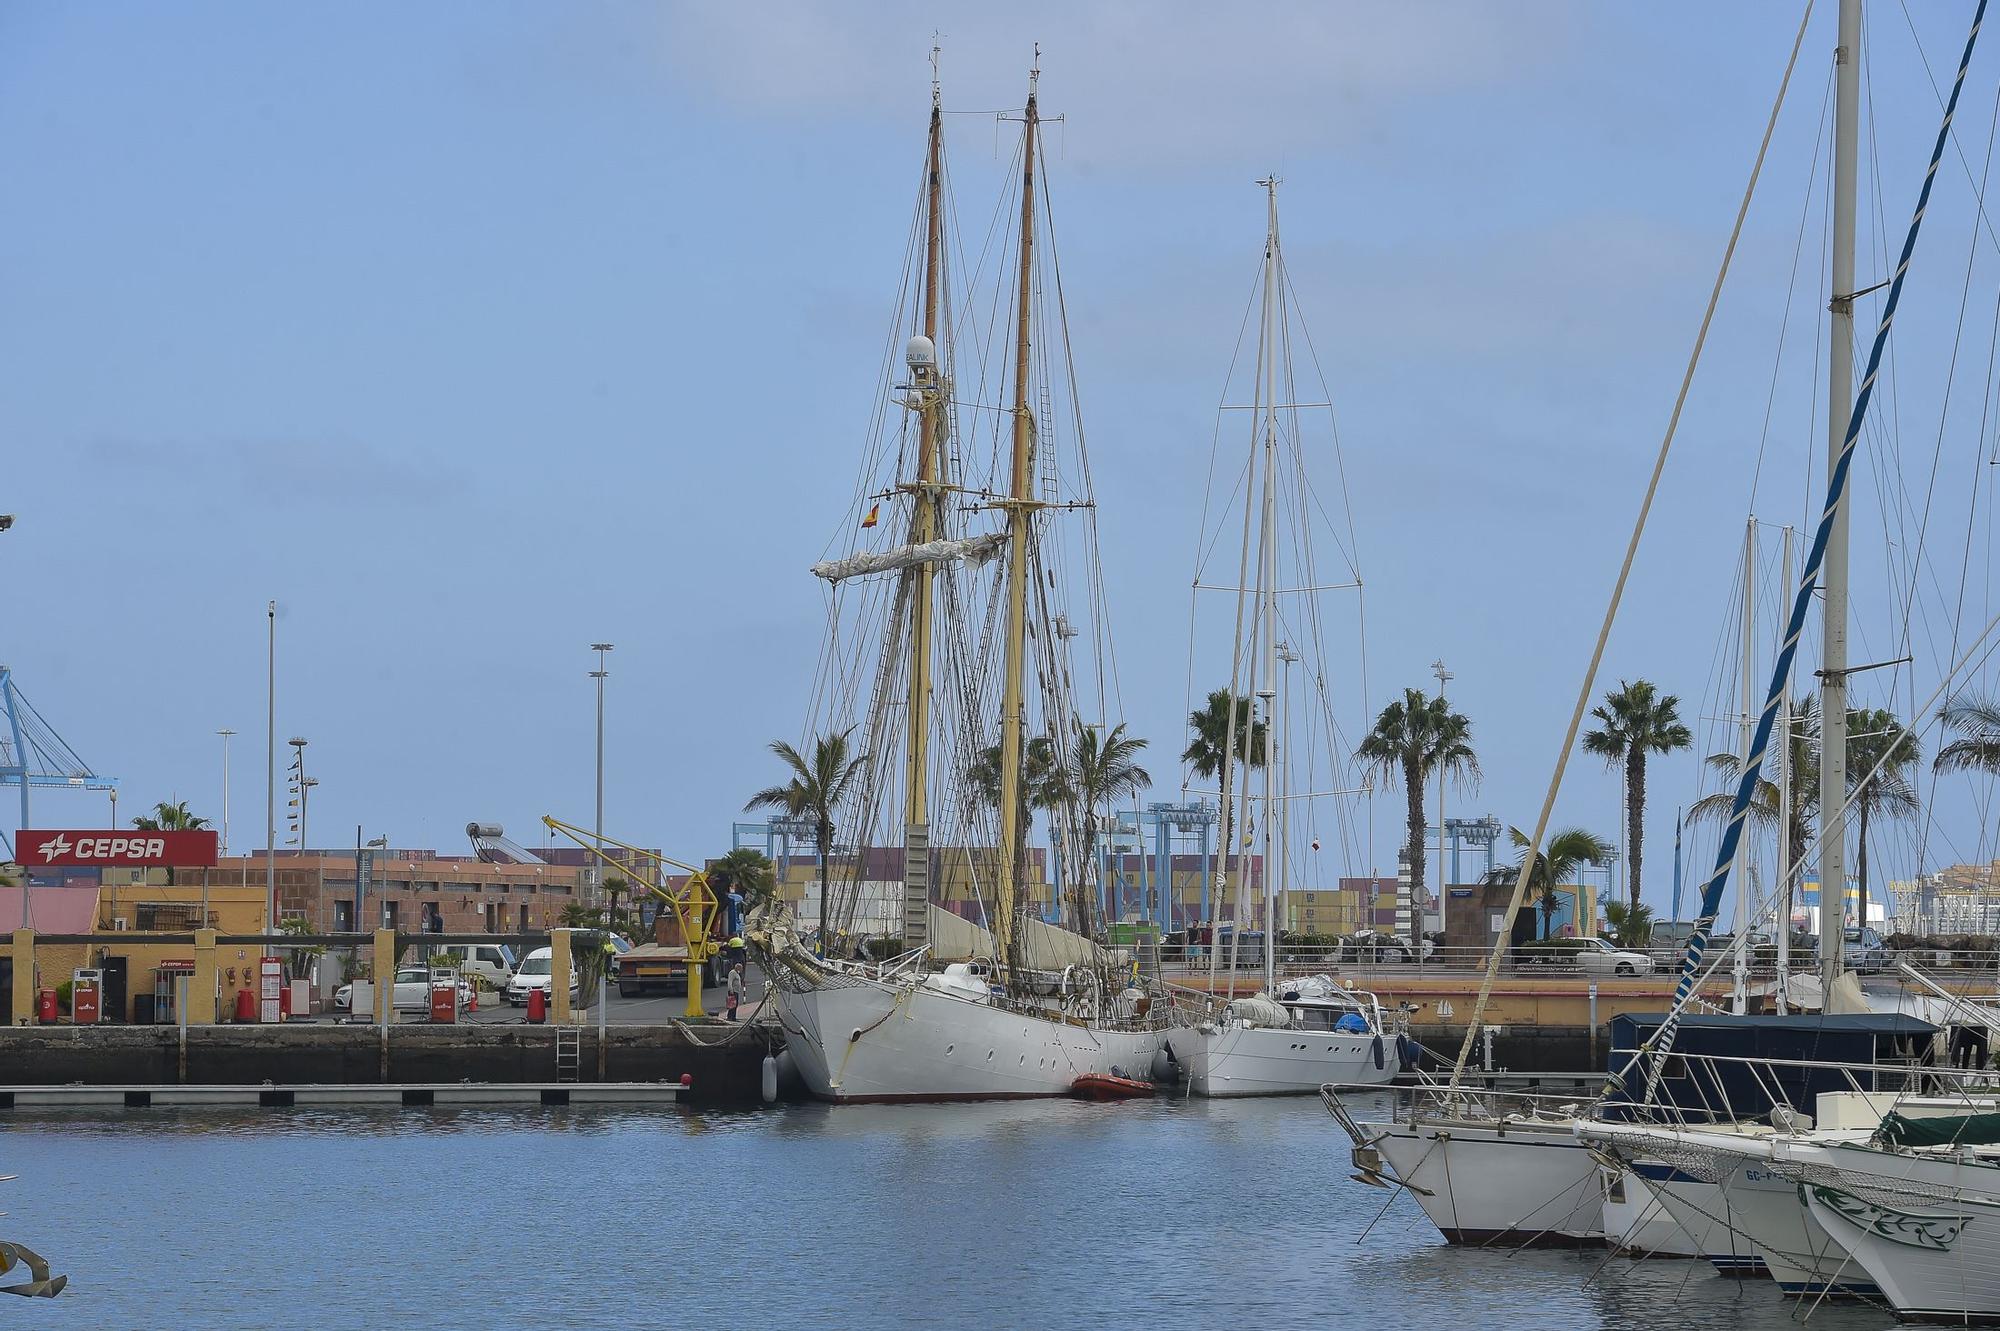 Veleros escuela Sorlandet y Gladan atracados en el puerto de Las Palmas de Gran Canaria